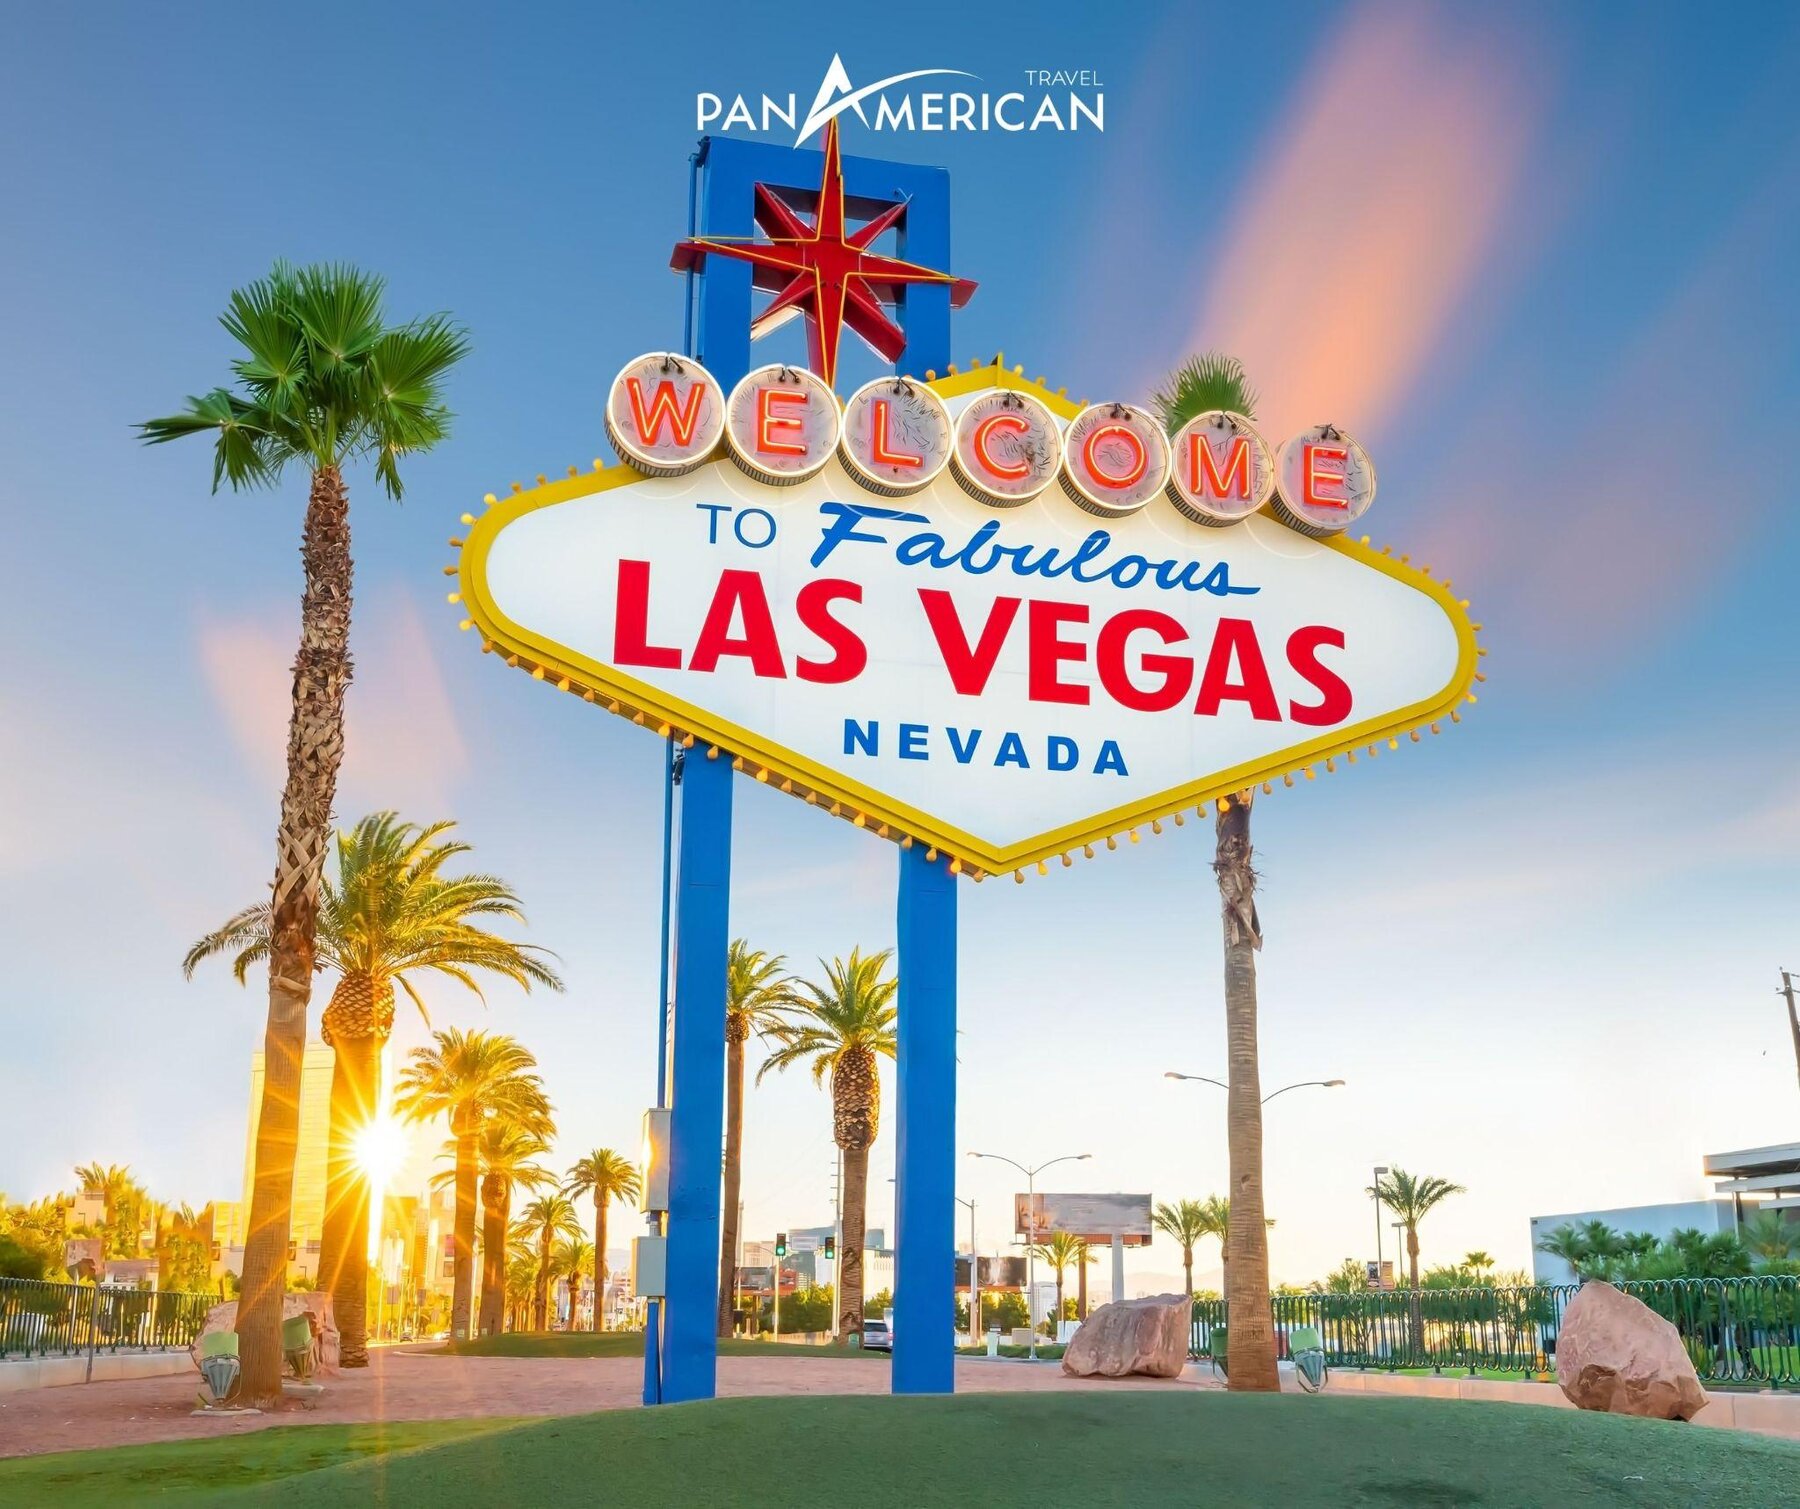 Las Vegas với biển chào nổi tiếng